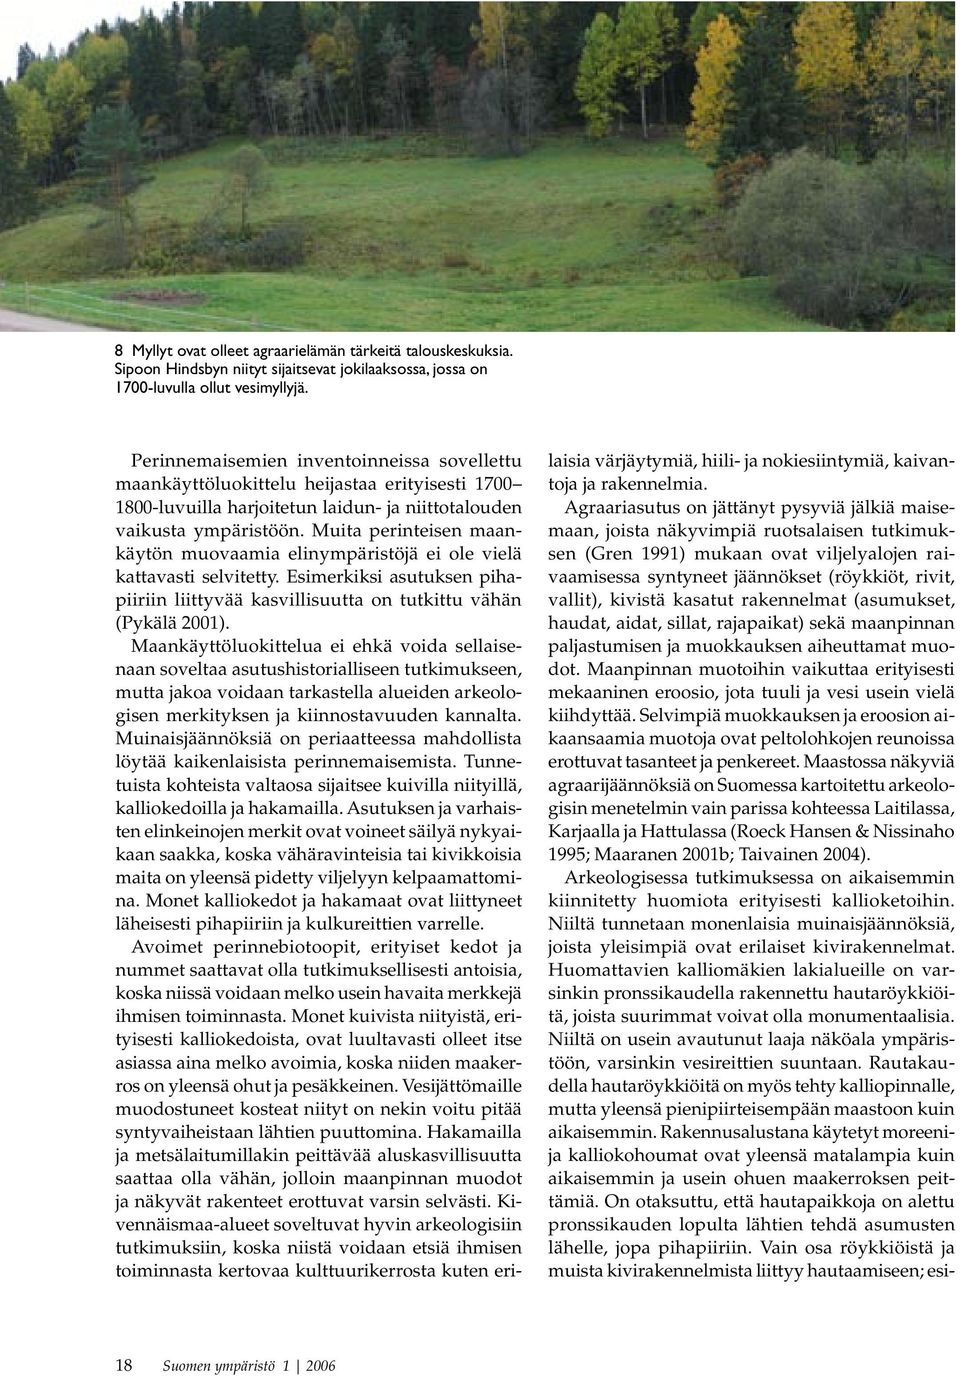 Muita perinteisen maankäytön muovaamia elinympäristöjä ei ole vielä kattavasti selvitetty. Esimerkiksi asutuksen pihapiiriin liittyvää kasvillisuutta on tutkittu vähän (Pykälä 2001).